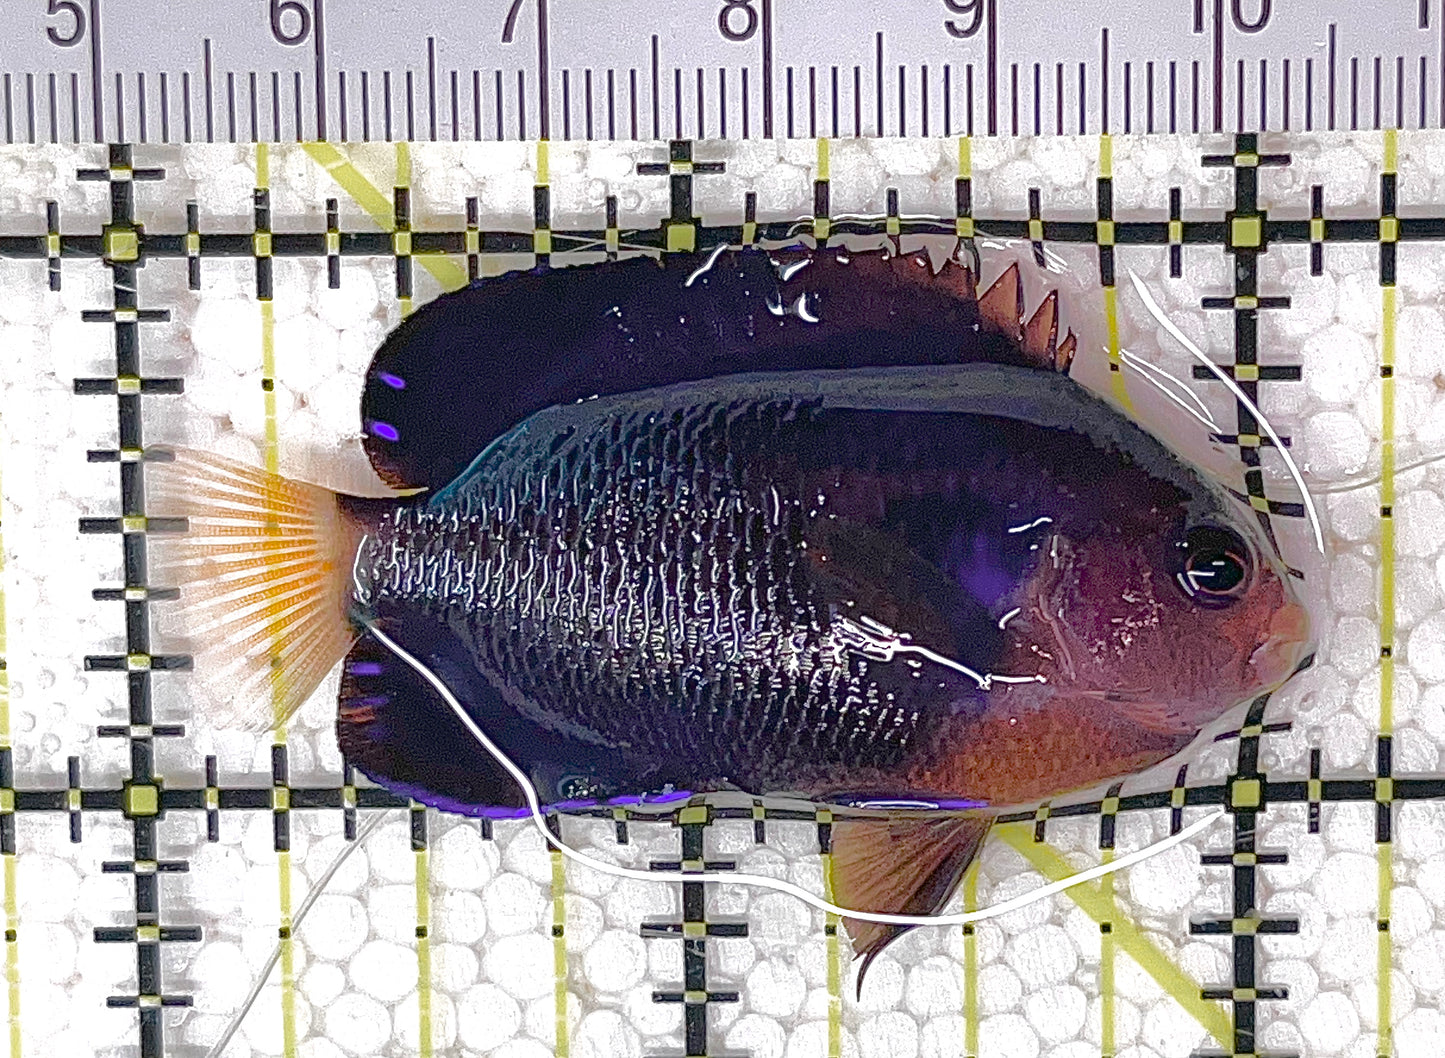 Cherub Angelfish CA040701 WYSIWYG Size: S 2.25" approx